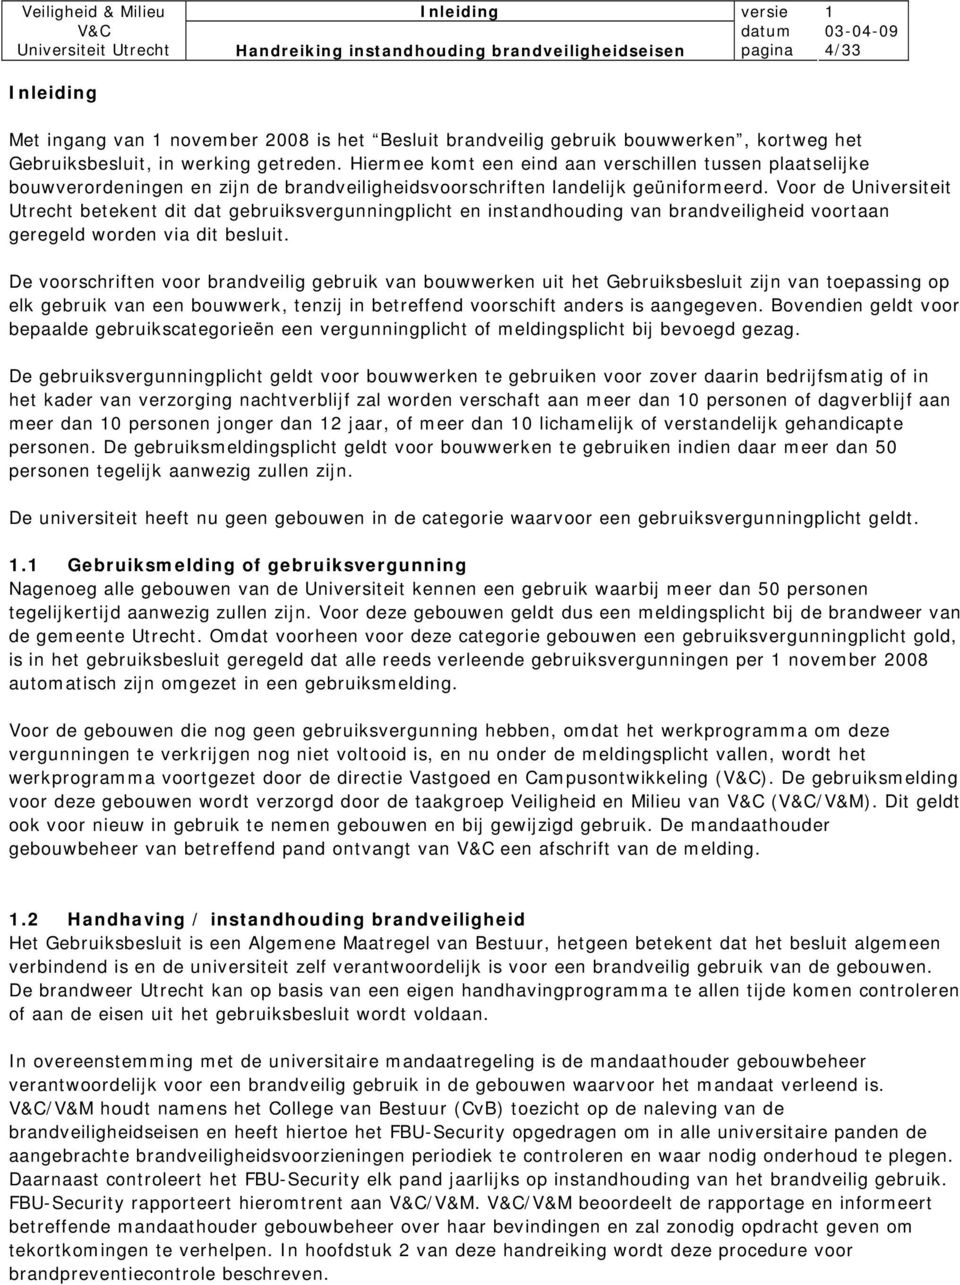 Voor de Universiteit Utrecht betekent dit dat gebruiksvergunningplicht en instandhouding van brandveiligheid voortaan geregeld worden via dit besluit.